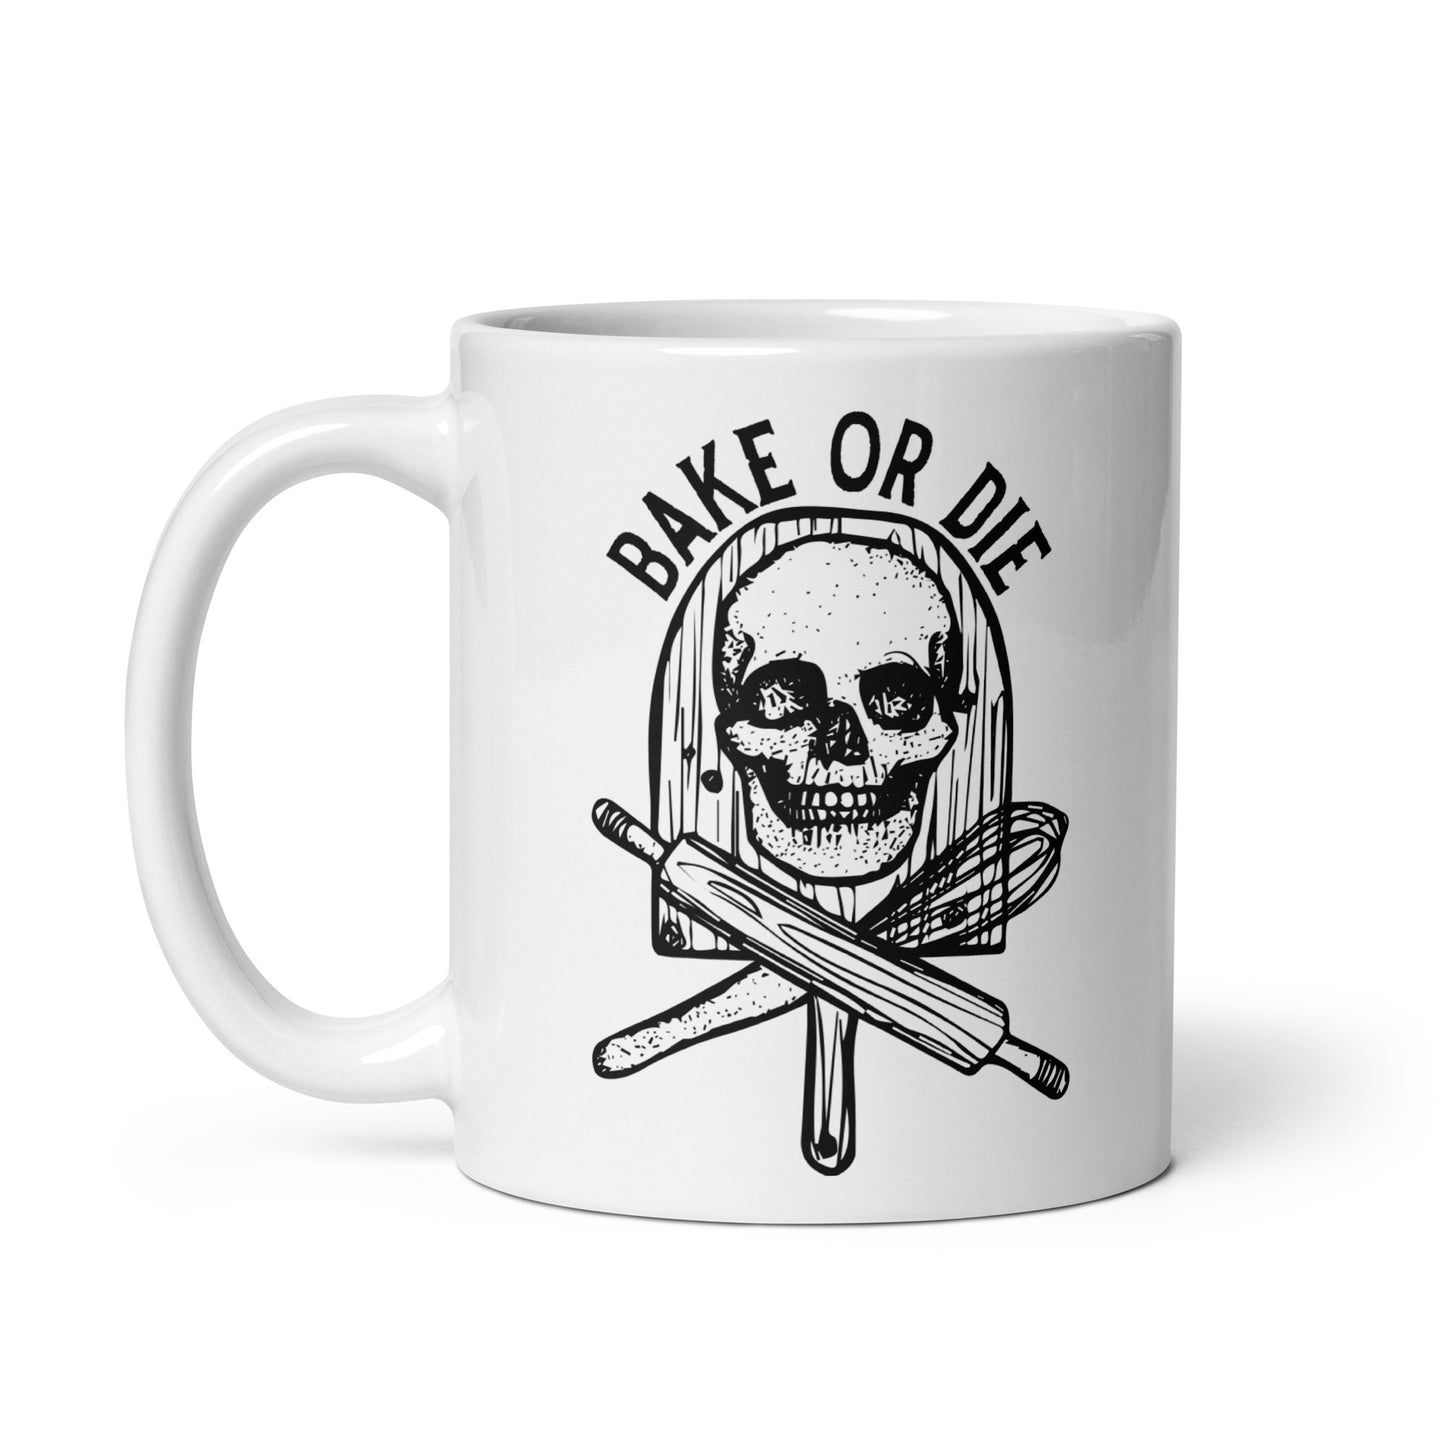 BellavanceInk: Coffee Mug With Pen & Ink Drawing Of A Skull Bake Or Die